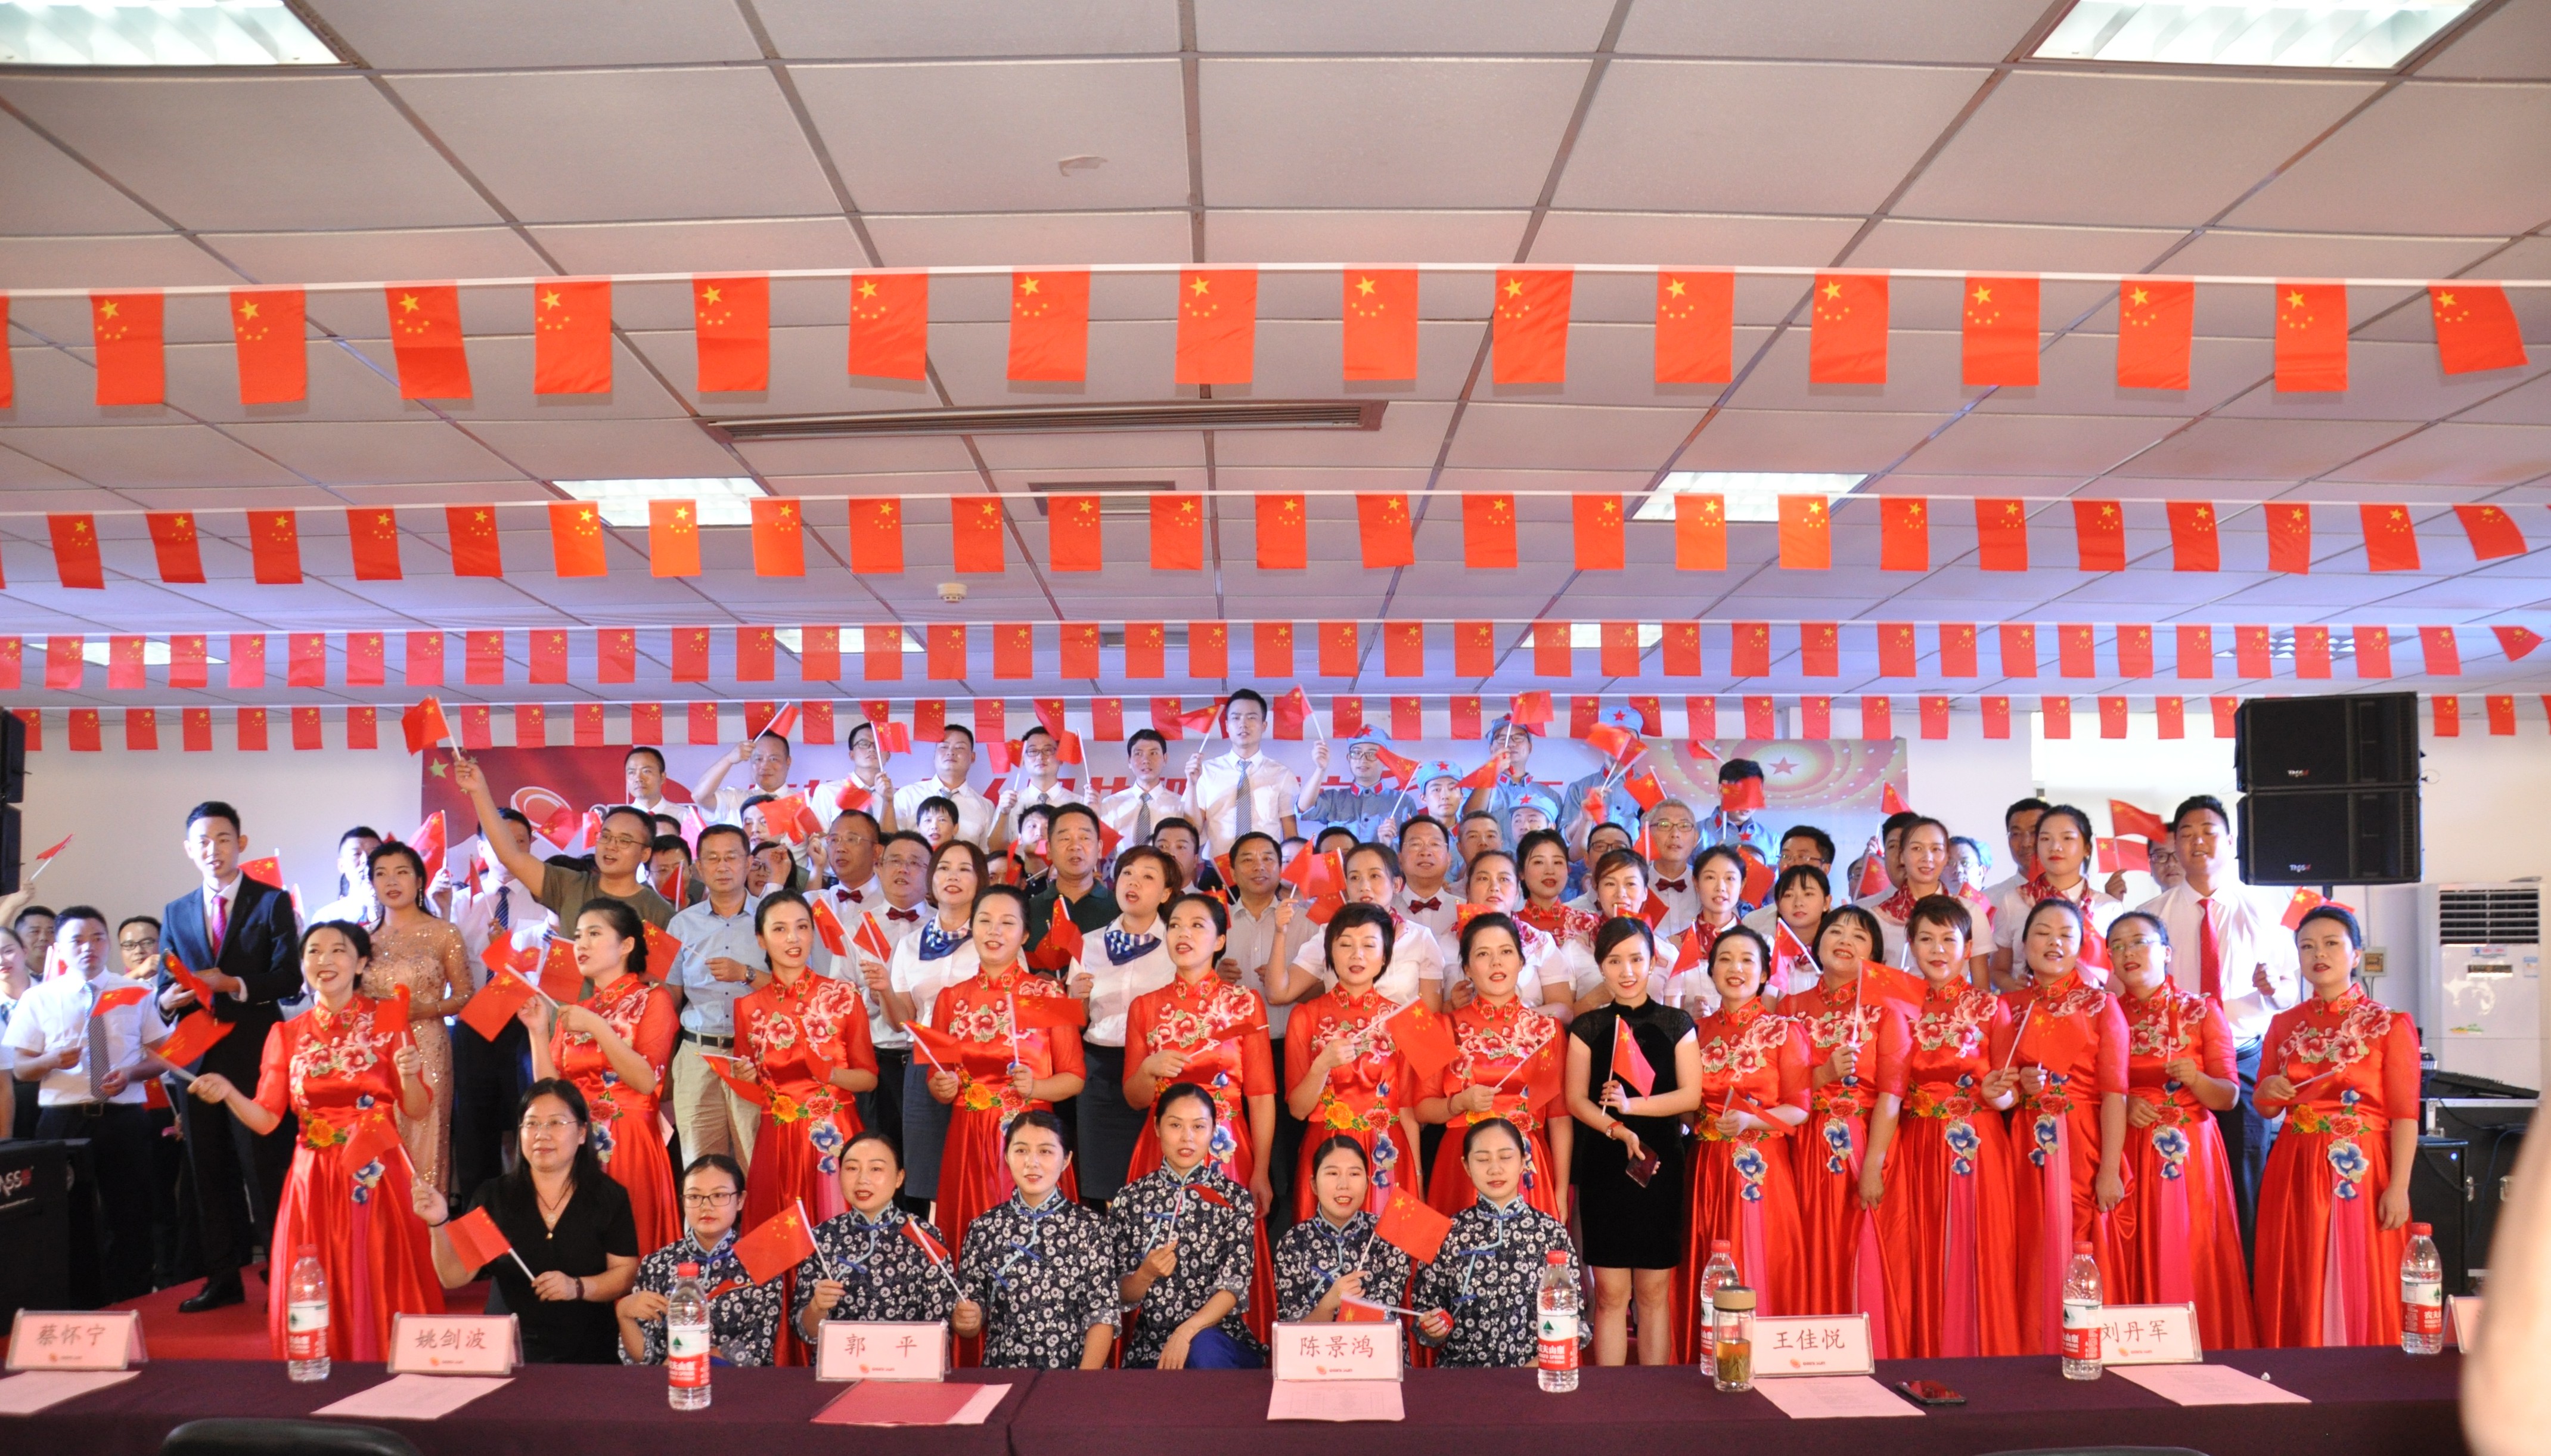 米乐官网(中国)有限公司隆重举办庆祝中华人民共和国成立70周年“普照杯”歌咏比赛